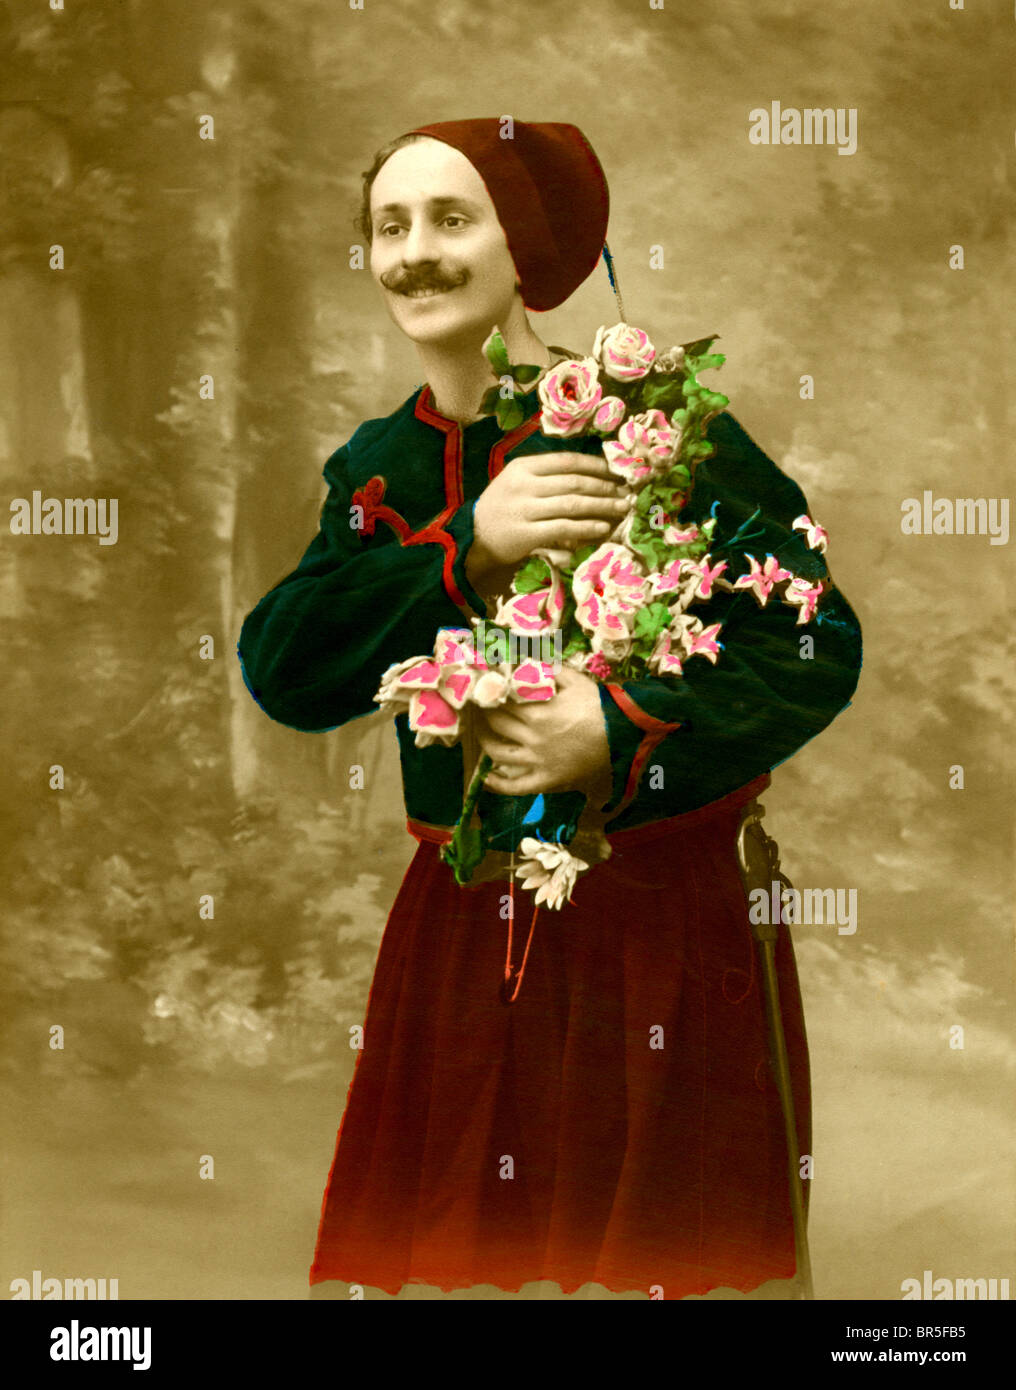 Photographie historique, l'homme avec des fleurs, vers 1915 Banque D'Images